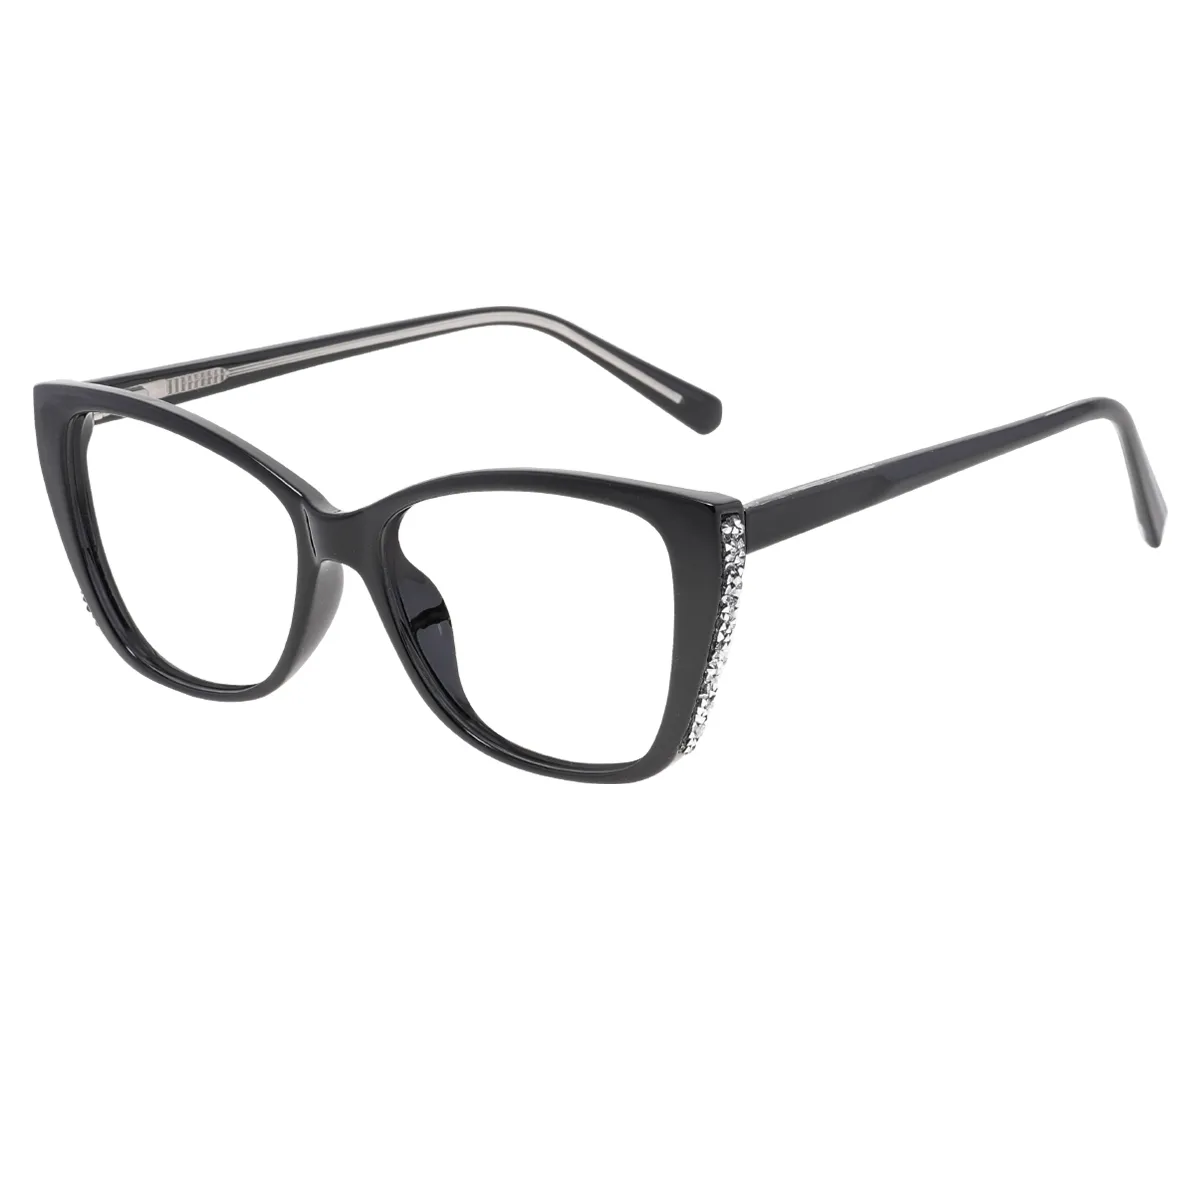 Georgia - Cat-eye Black Glasses for Women